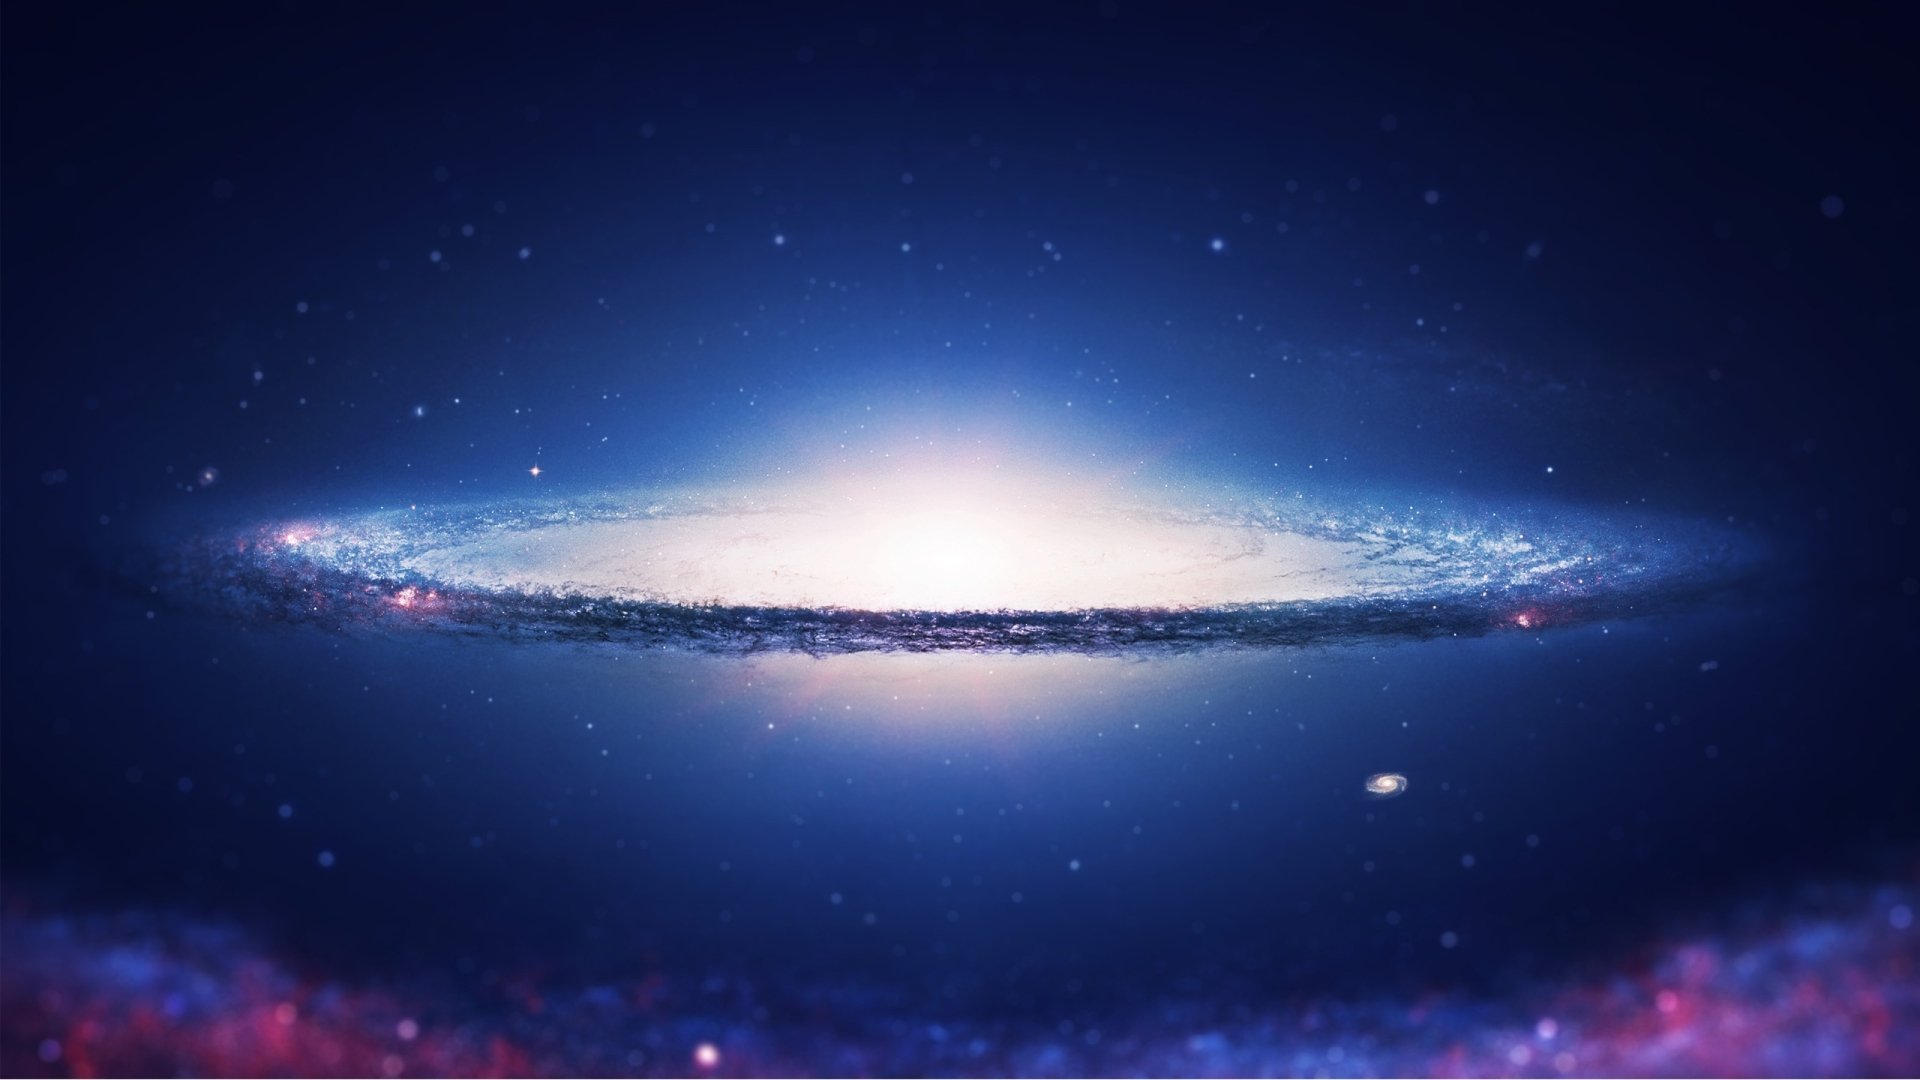 Hãy tham quan thiên hà xoắn ốc đầy màu sắc và đẹp mắt, nơi bạn sẽ được tận hưởng những thước phim tuyệt đẹp về không gian. Những hình ảnh sẽ làm bạn ngỡ ngàng trước vẻ đẹp của vũ trụ.